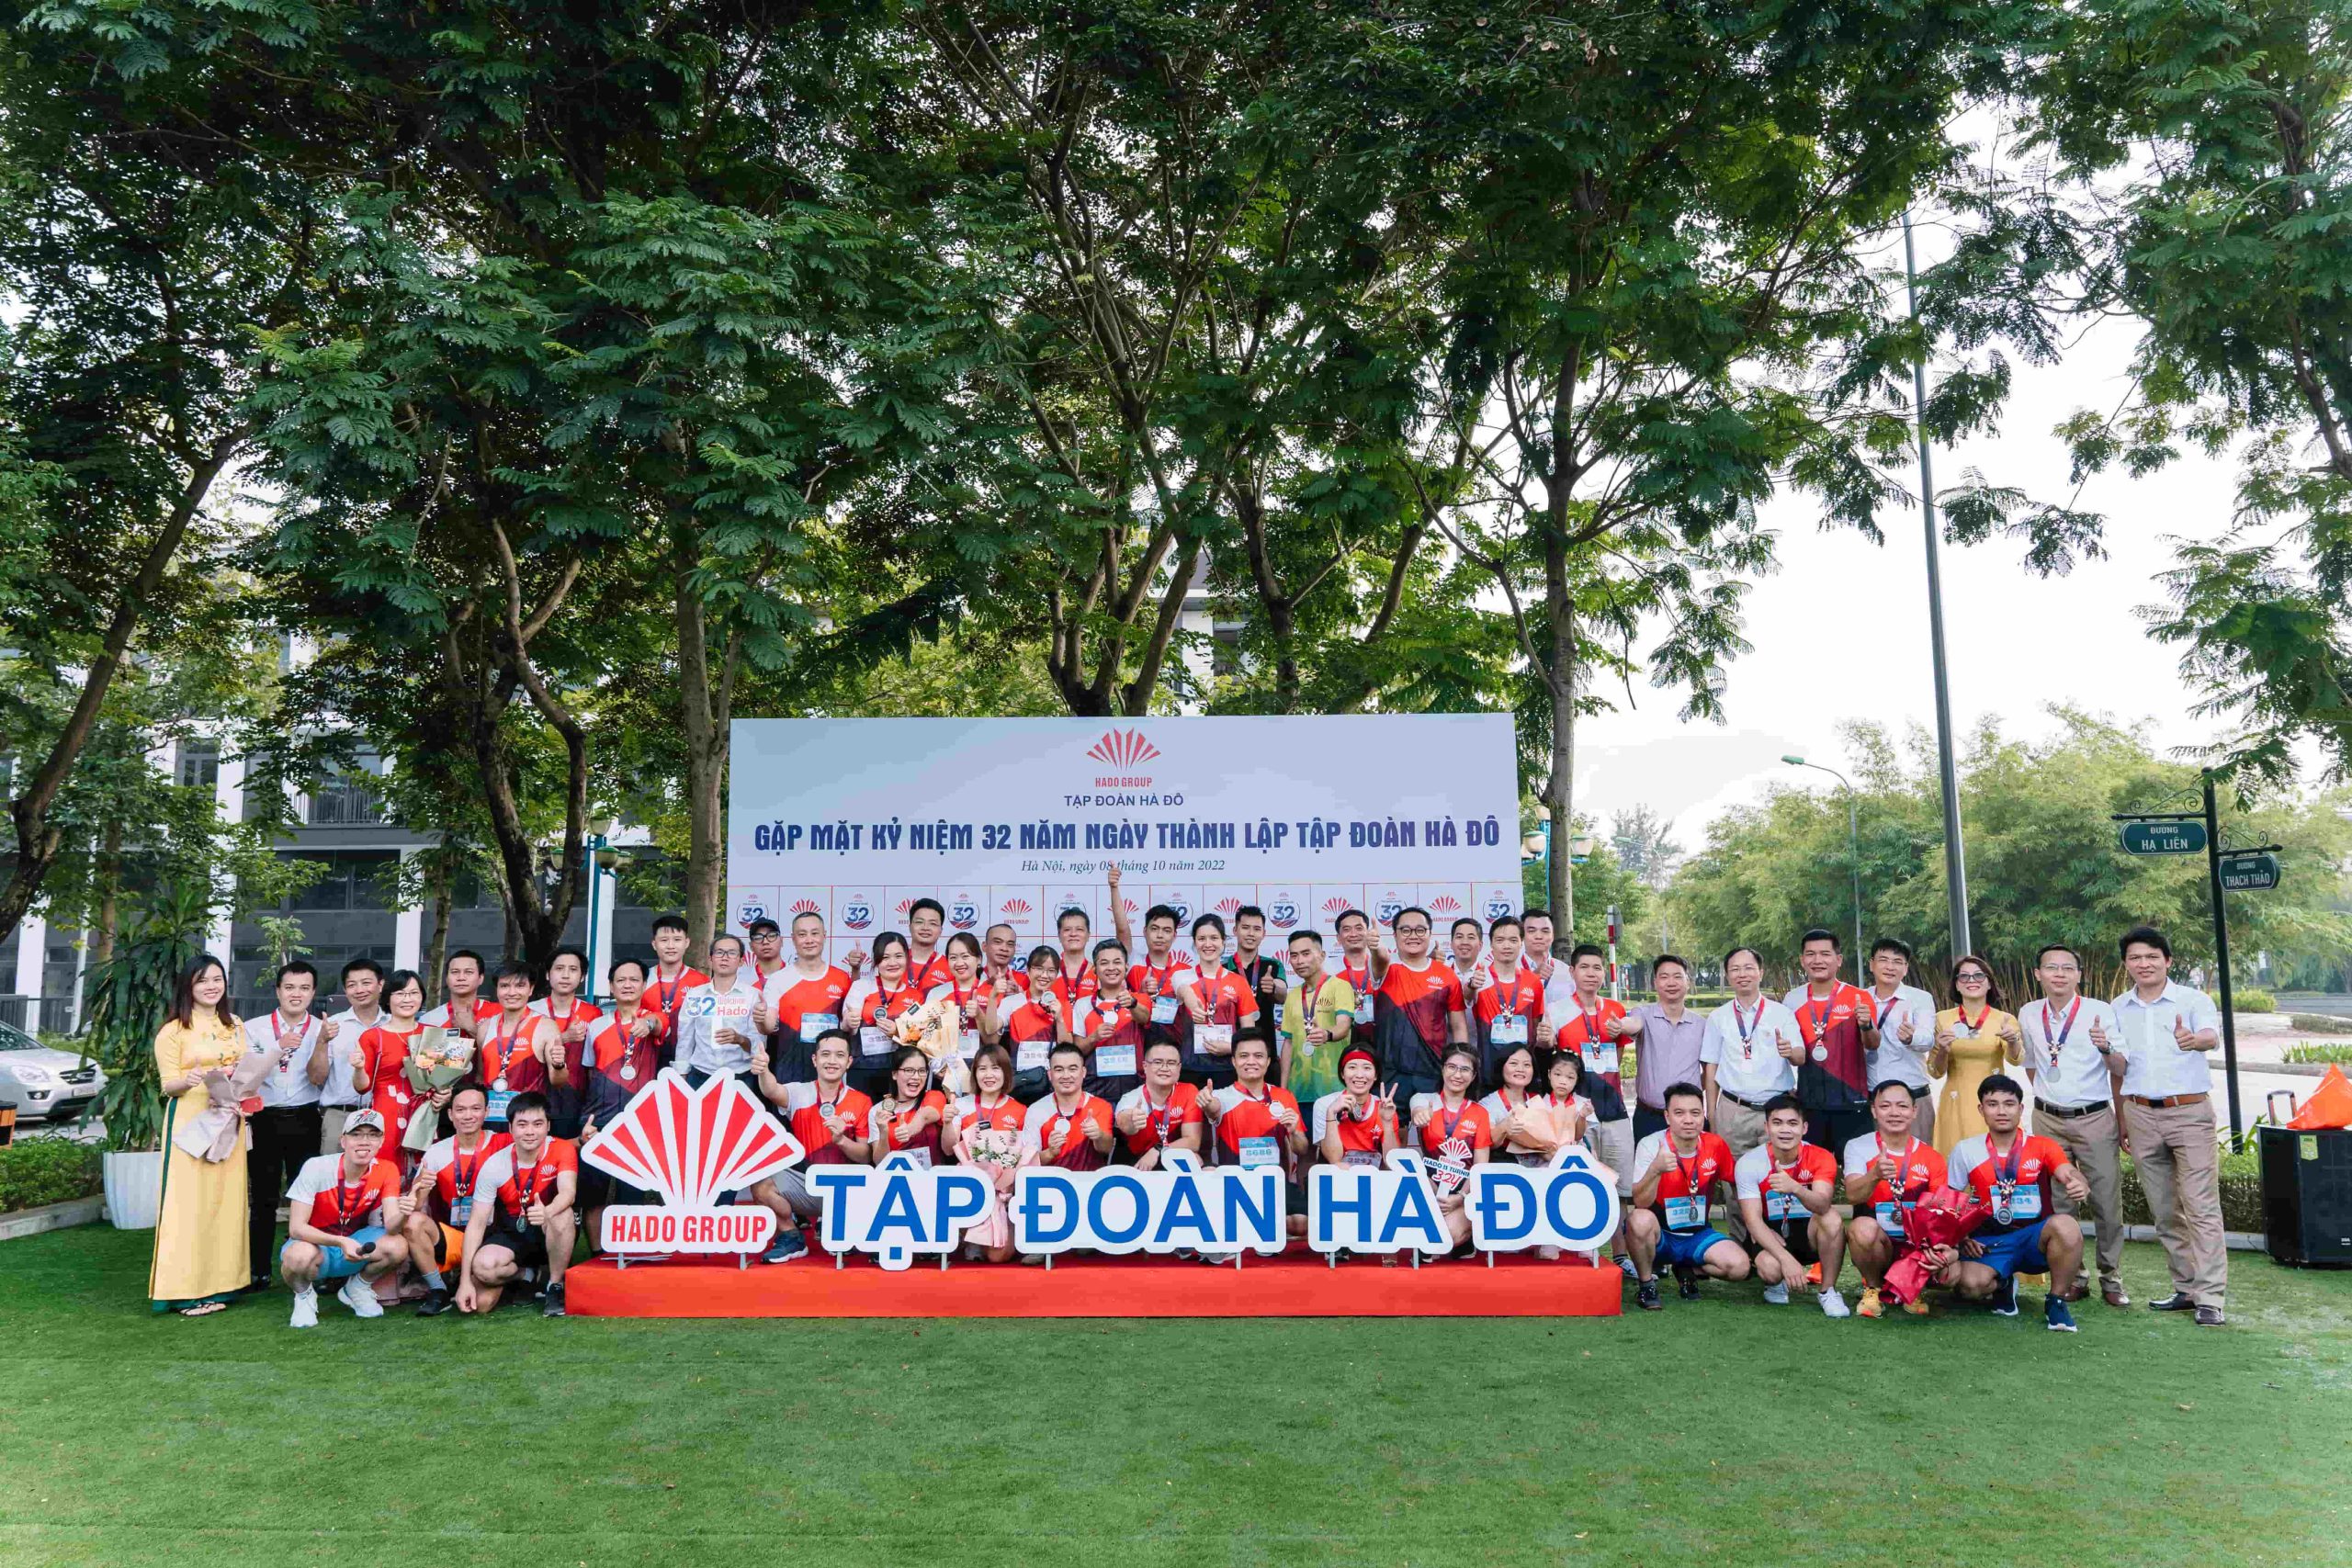 Tập đoàn An Lạc tham gia chuỗi hoạt động Kỷ niệm 32 năm thành lập Tập đoàn Hà Đô